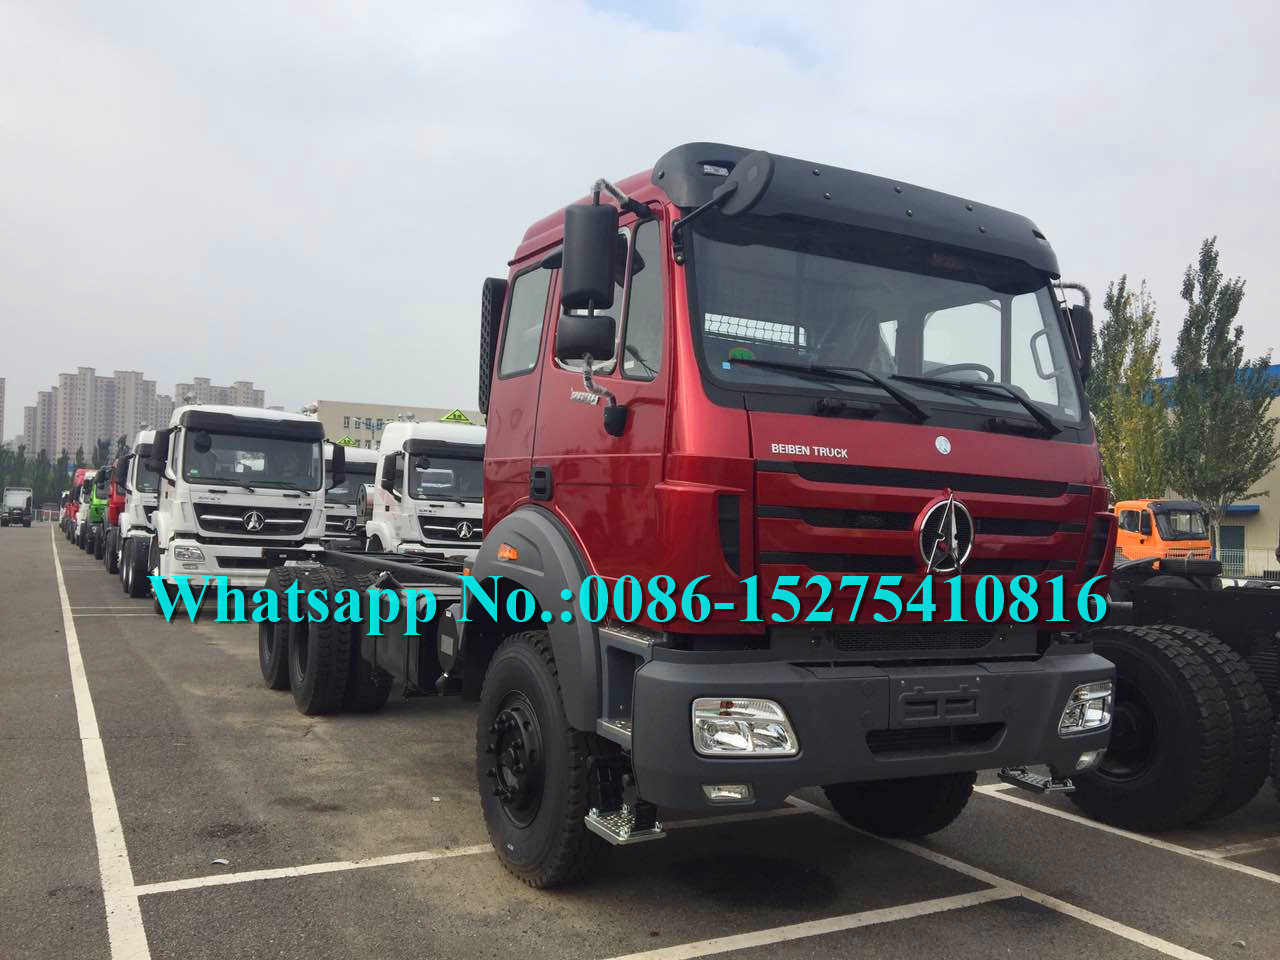 Red Military sử dụng xe tải chở hàng 6x6 / xe tải chở hàng đường bộ thông qua công nghệ Benz